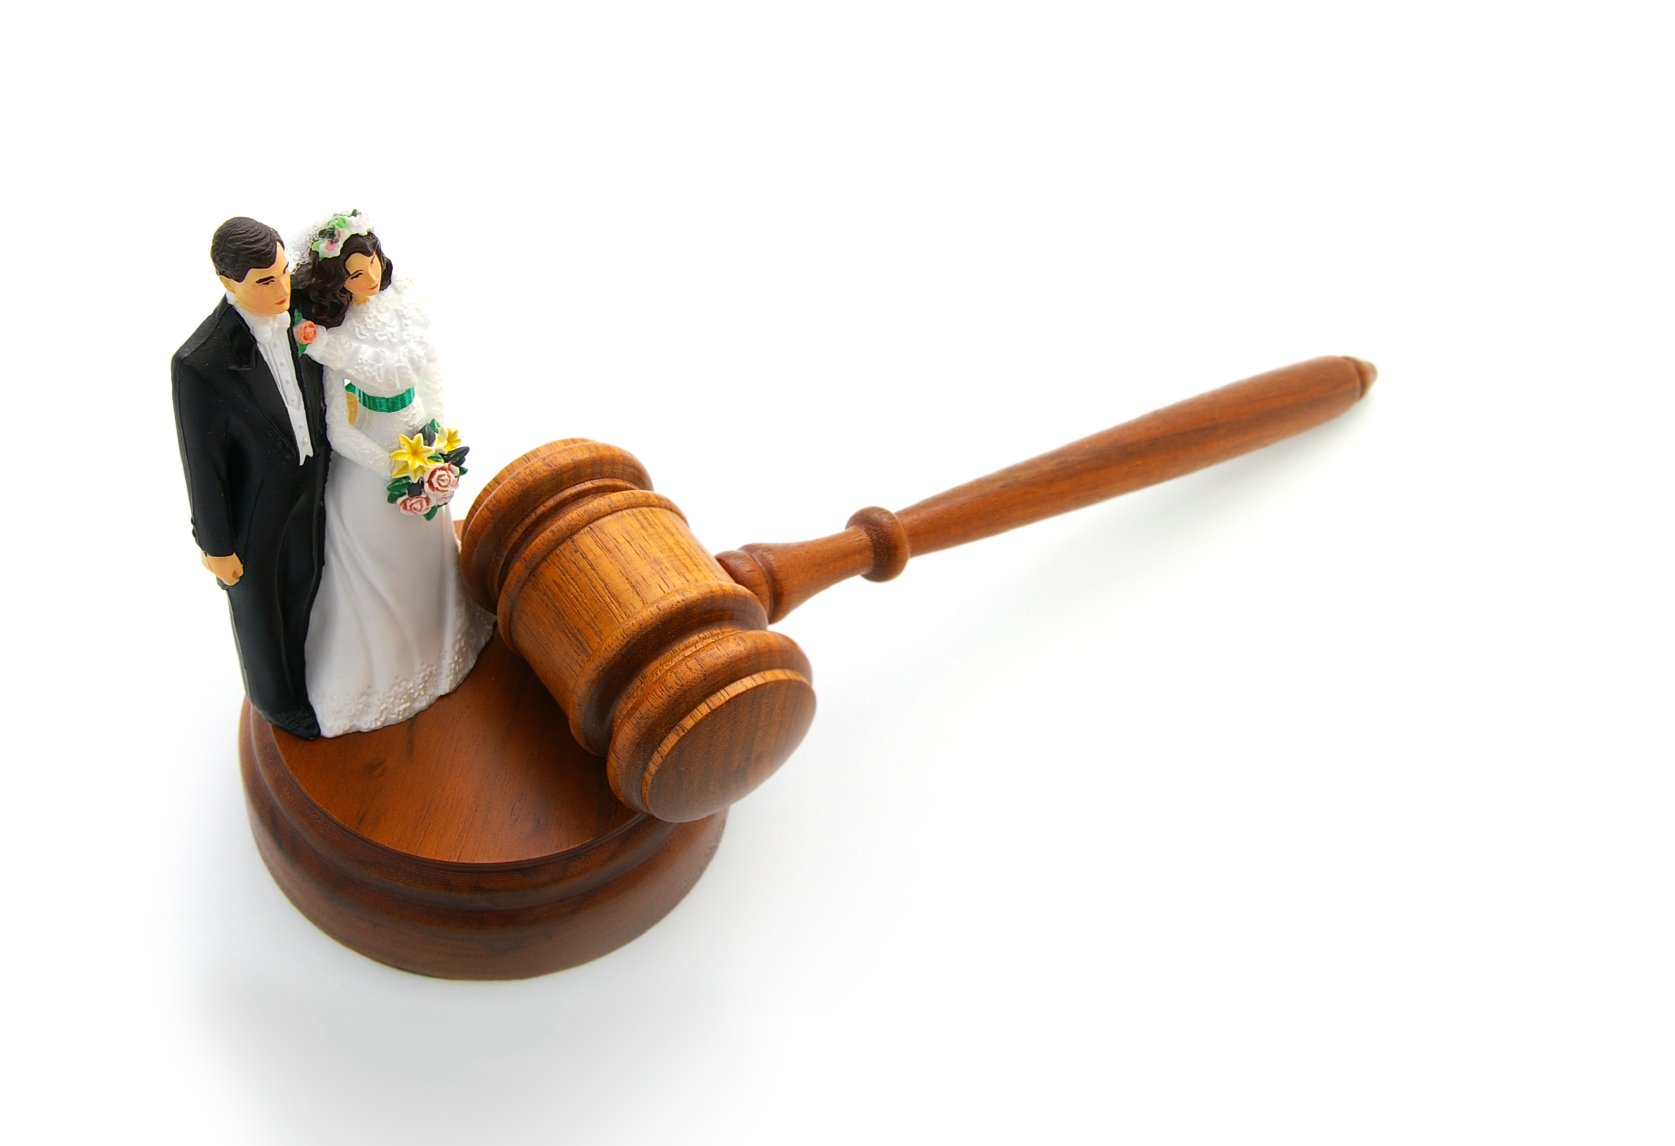 【證婚律師推介】不想證婚儀式中伏？尋找證婚律師前必讀5大注意事項！